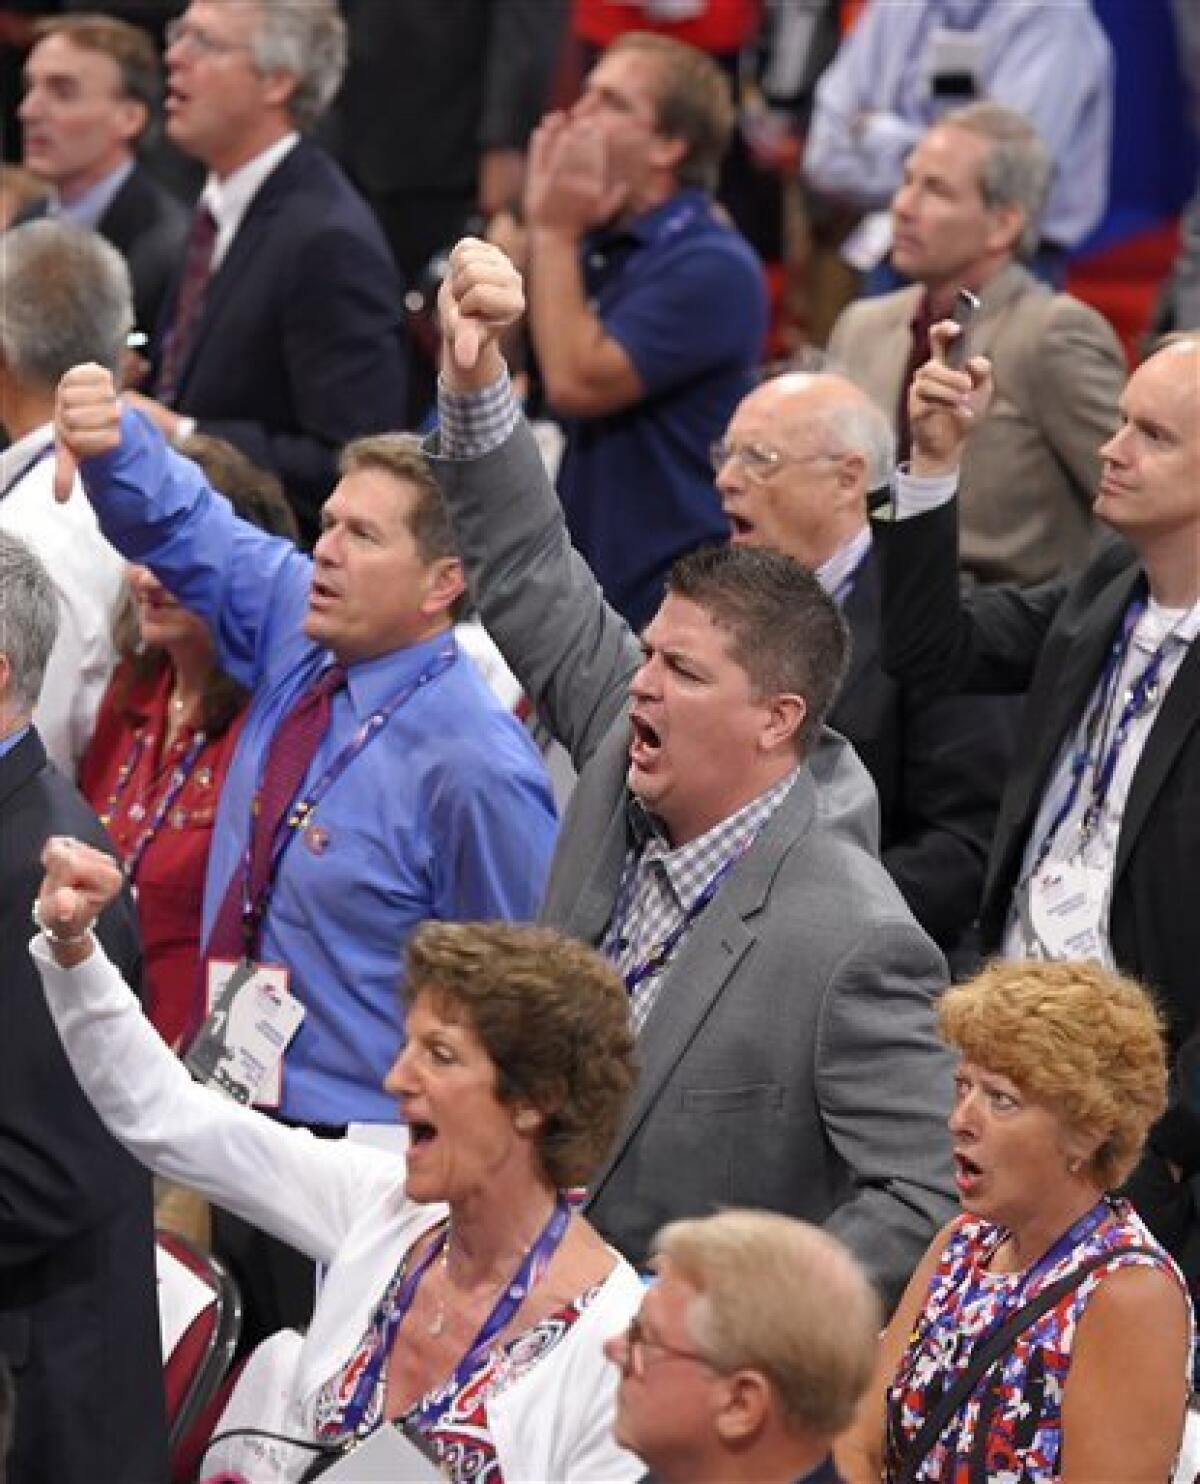 Algunos delegados muestran su inconformidad durante la adopción de las reglas en el primer día de la Convención Nacional Republicana que se realiza en Cleveland el lunes 18 de julio de 2016. (AP Foto/Mark J. Terrill)